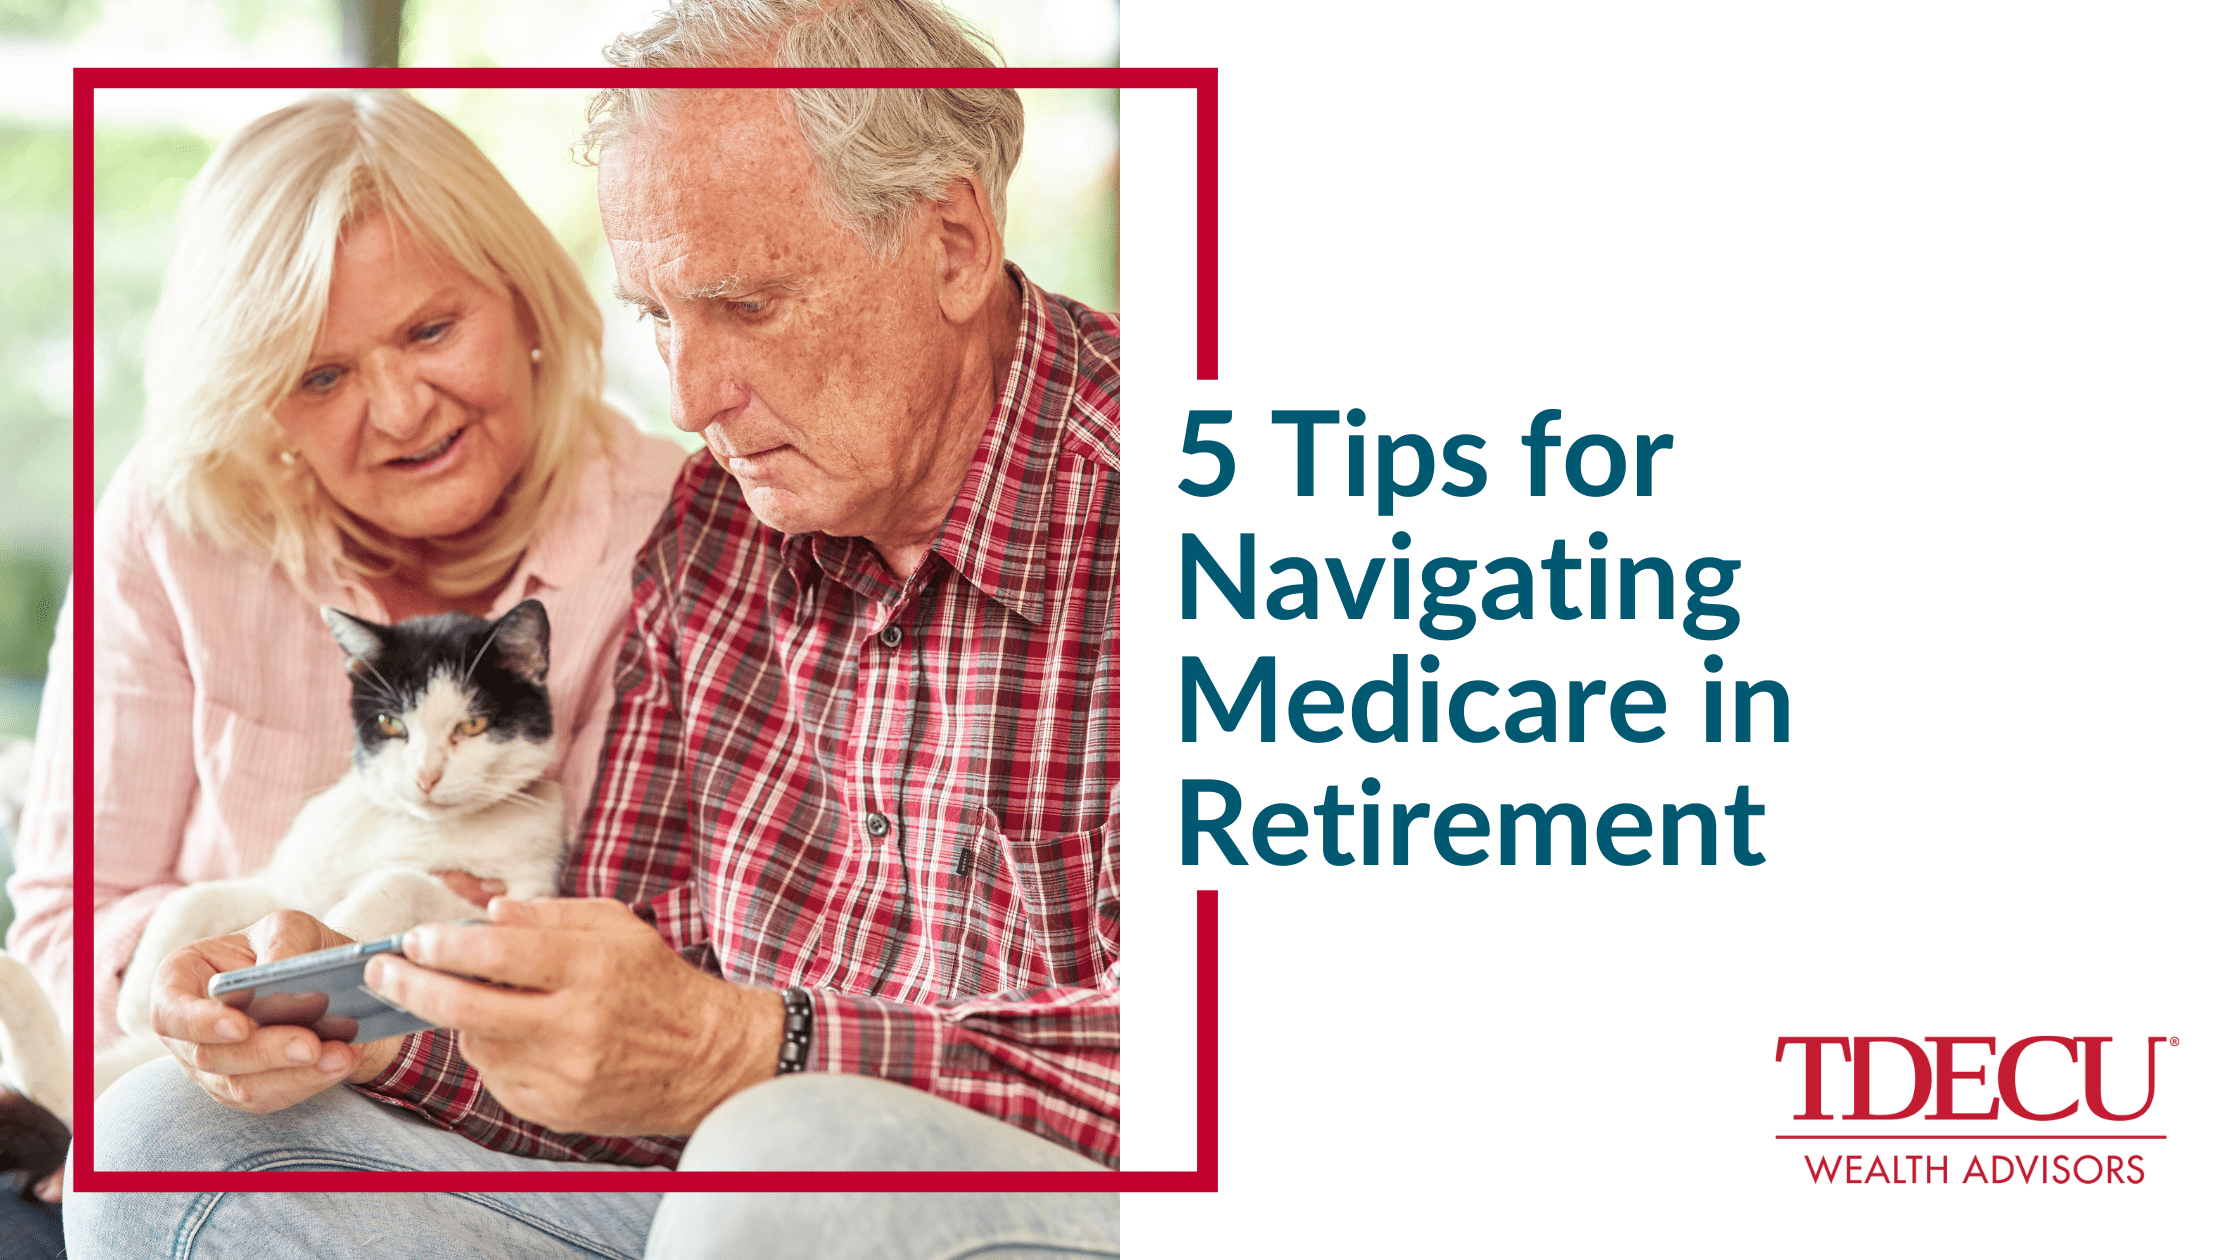 5 Tips for Navigating Medicare in Retirement